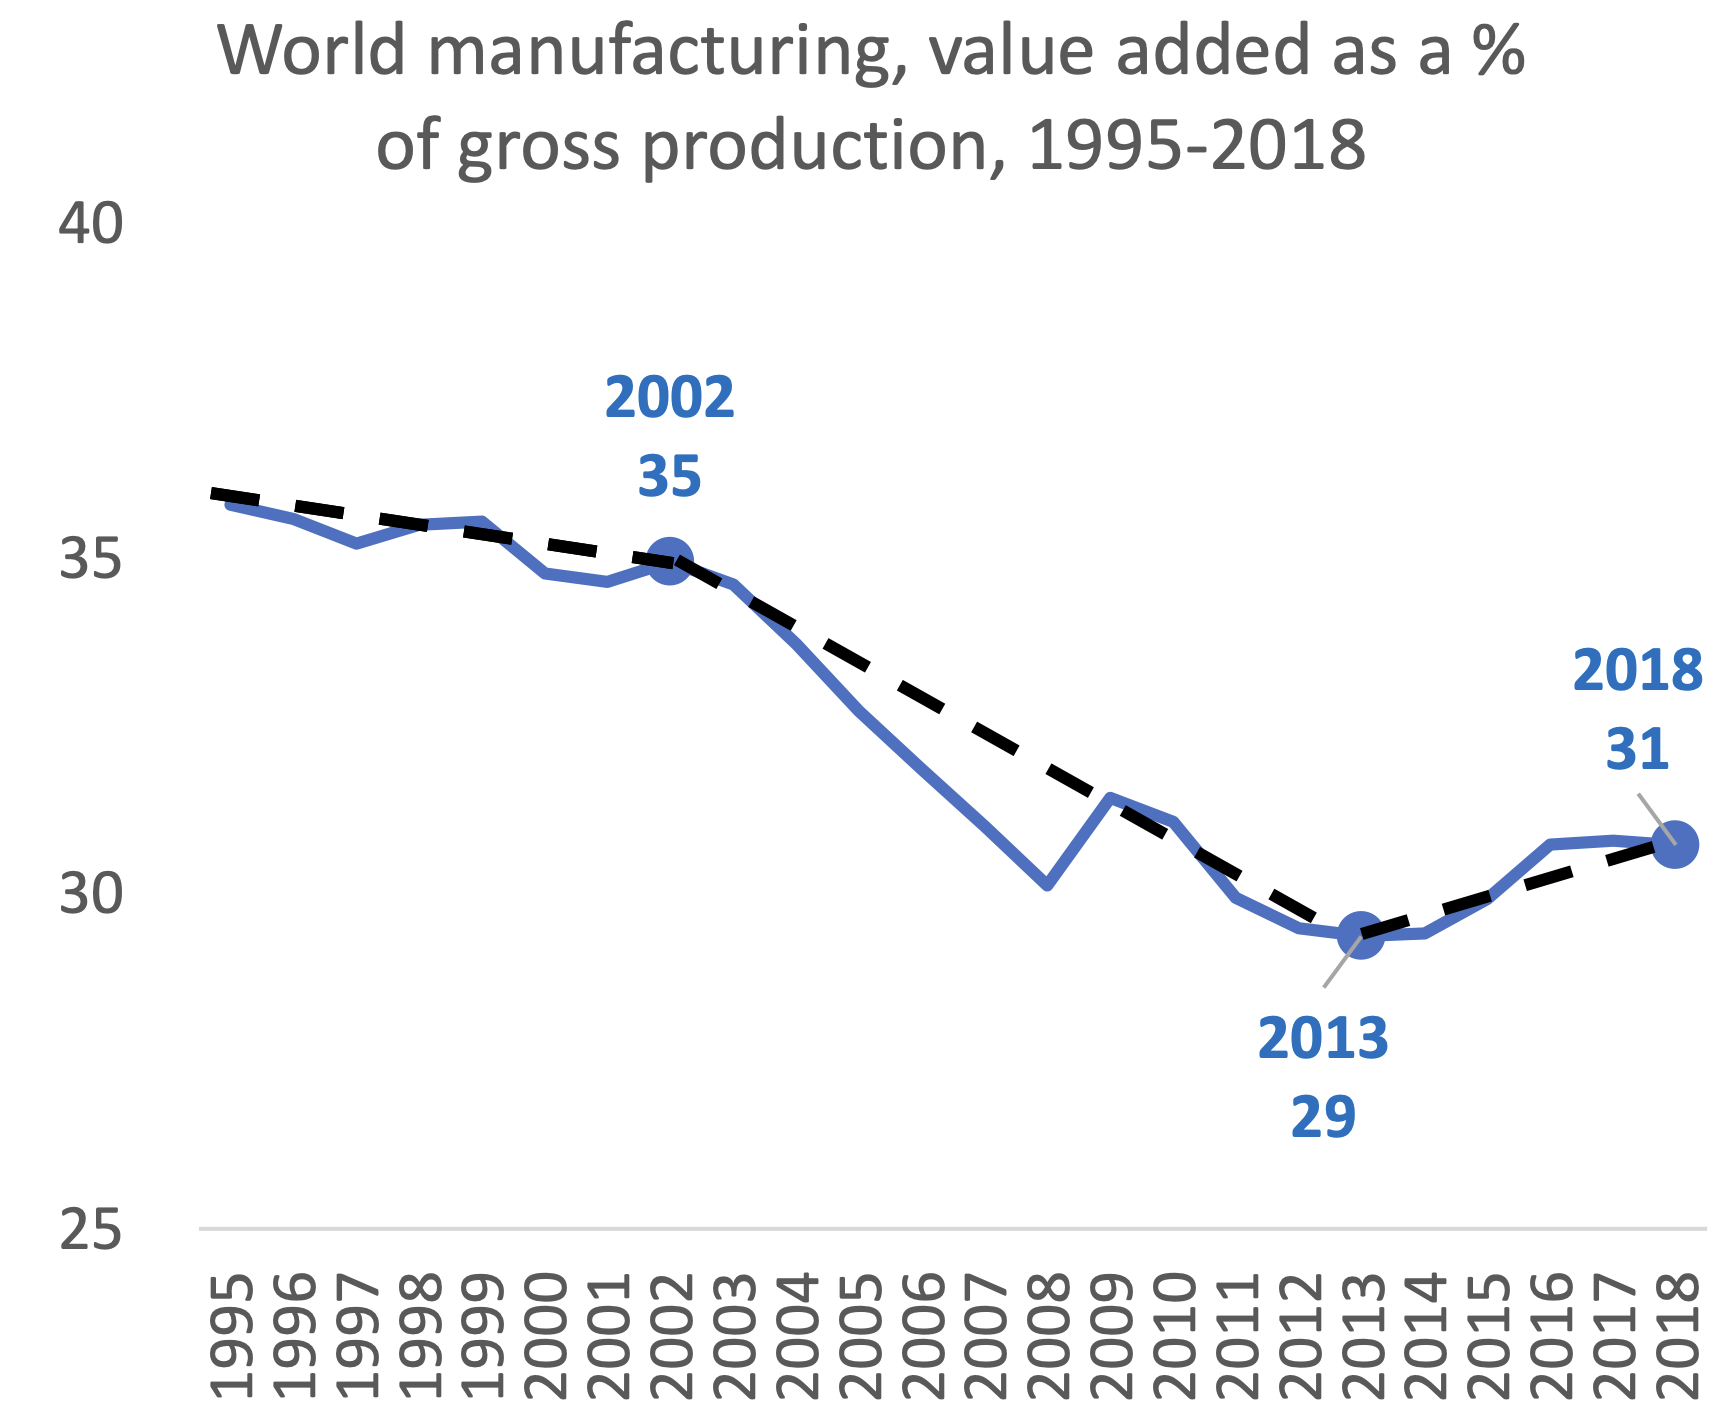 图4 1995-2018年世界制造业增加值占生产总值的比率